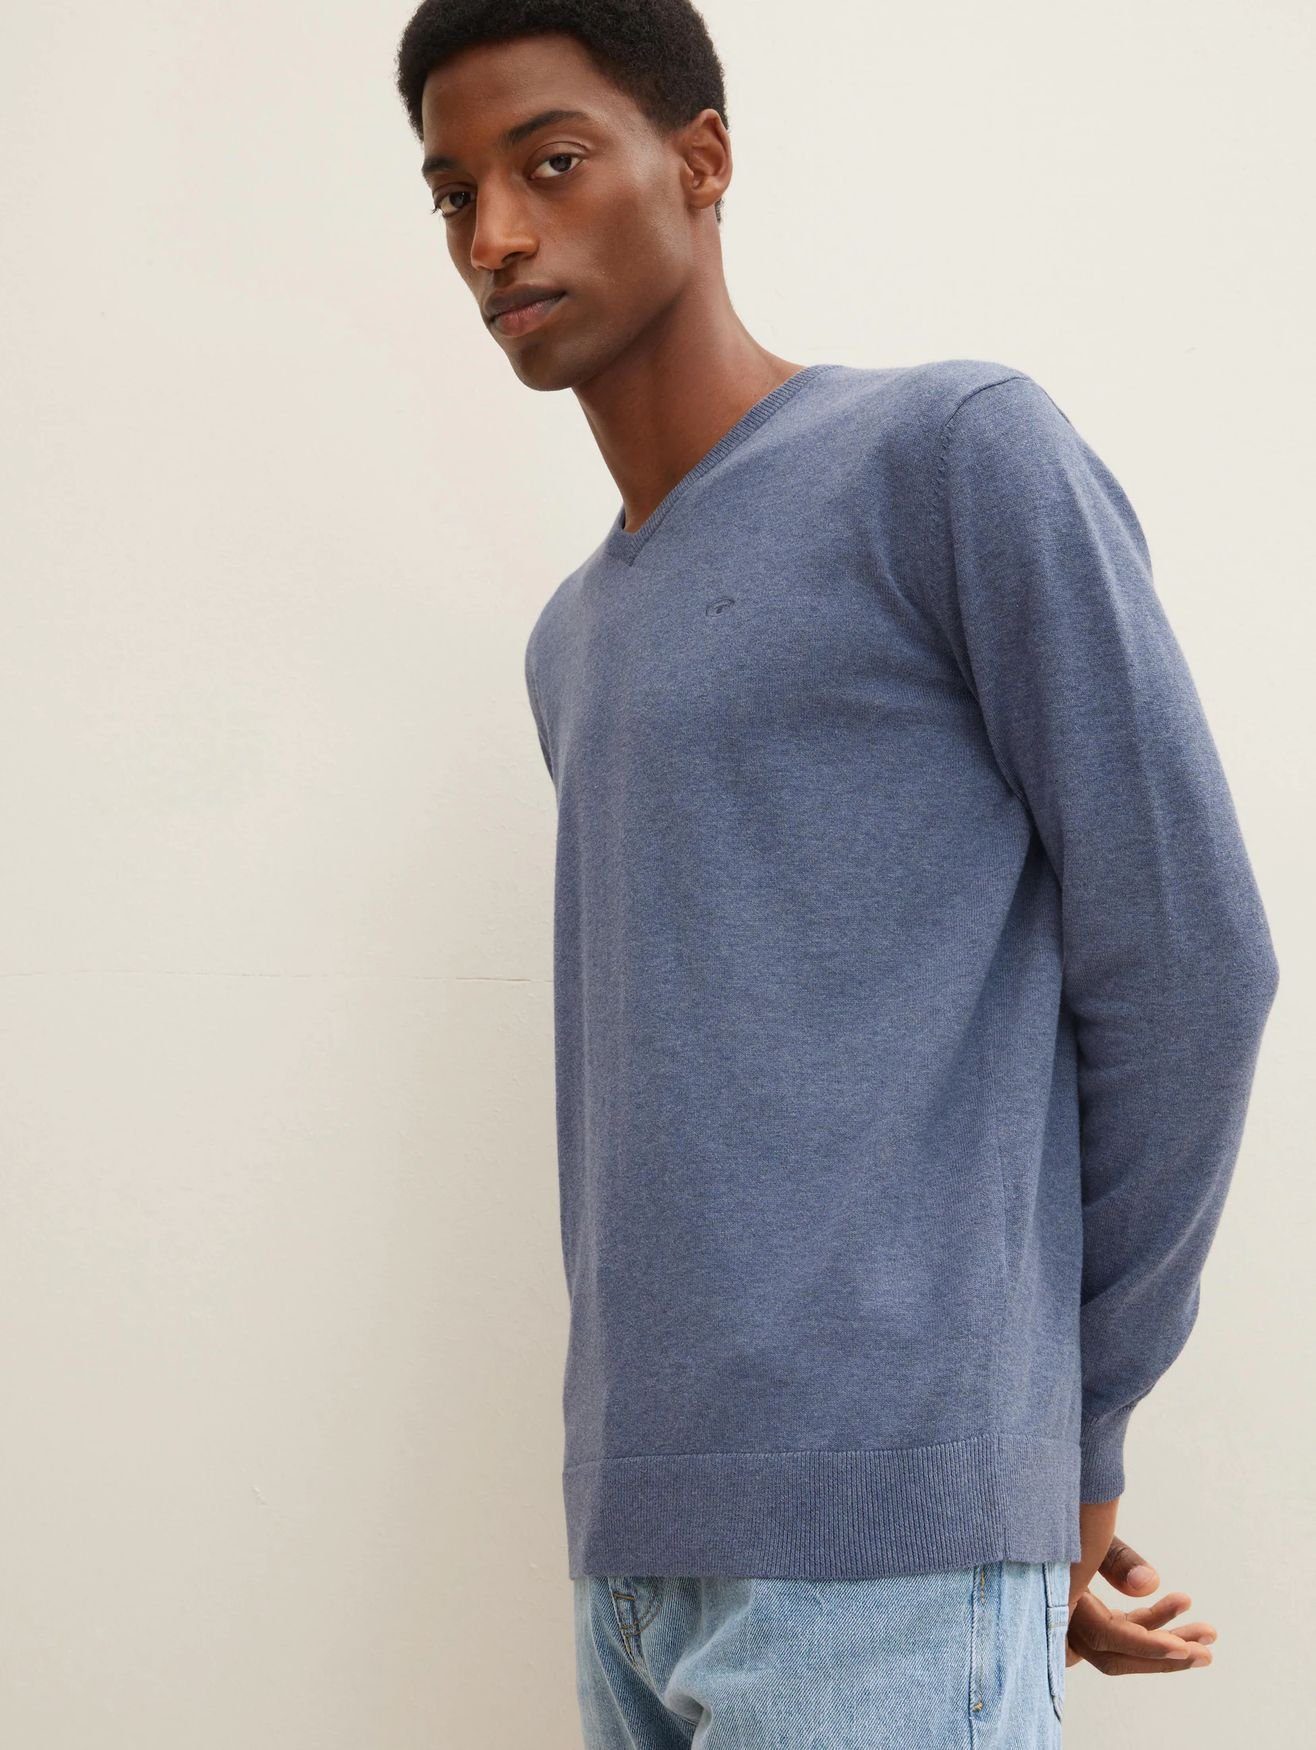 Feinstrick Pullover in Blau V-Ausschnitt 4652 Sweater Strickpullover TAILOR TOM Basic Dünner